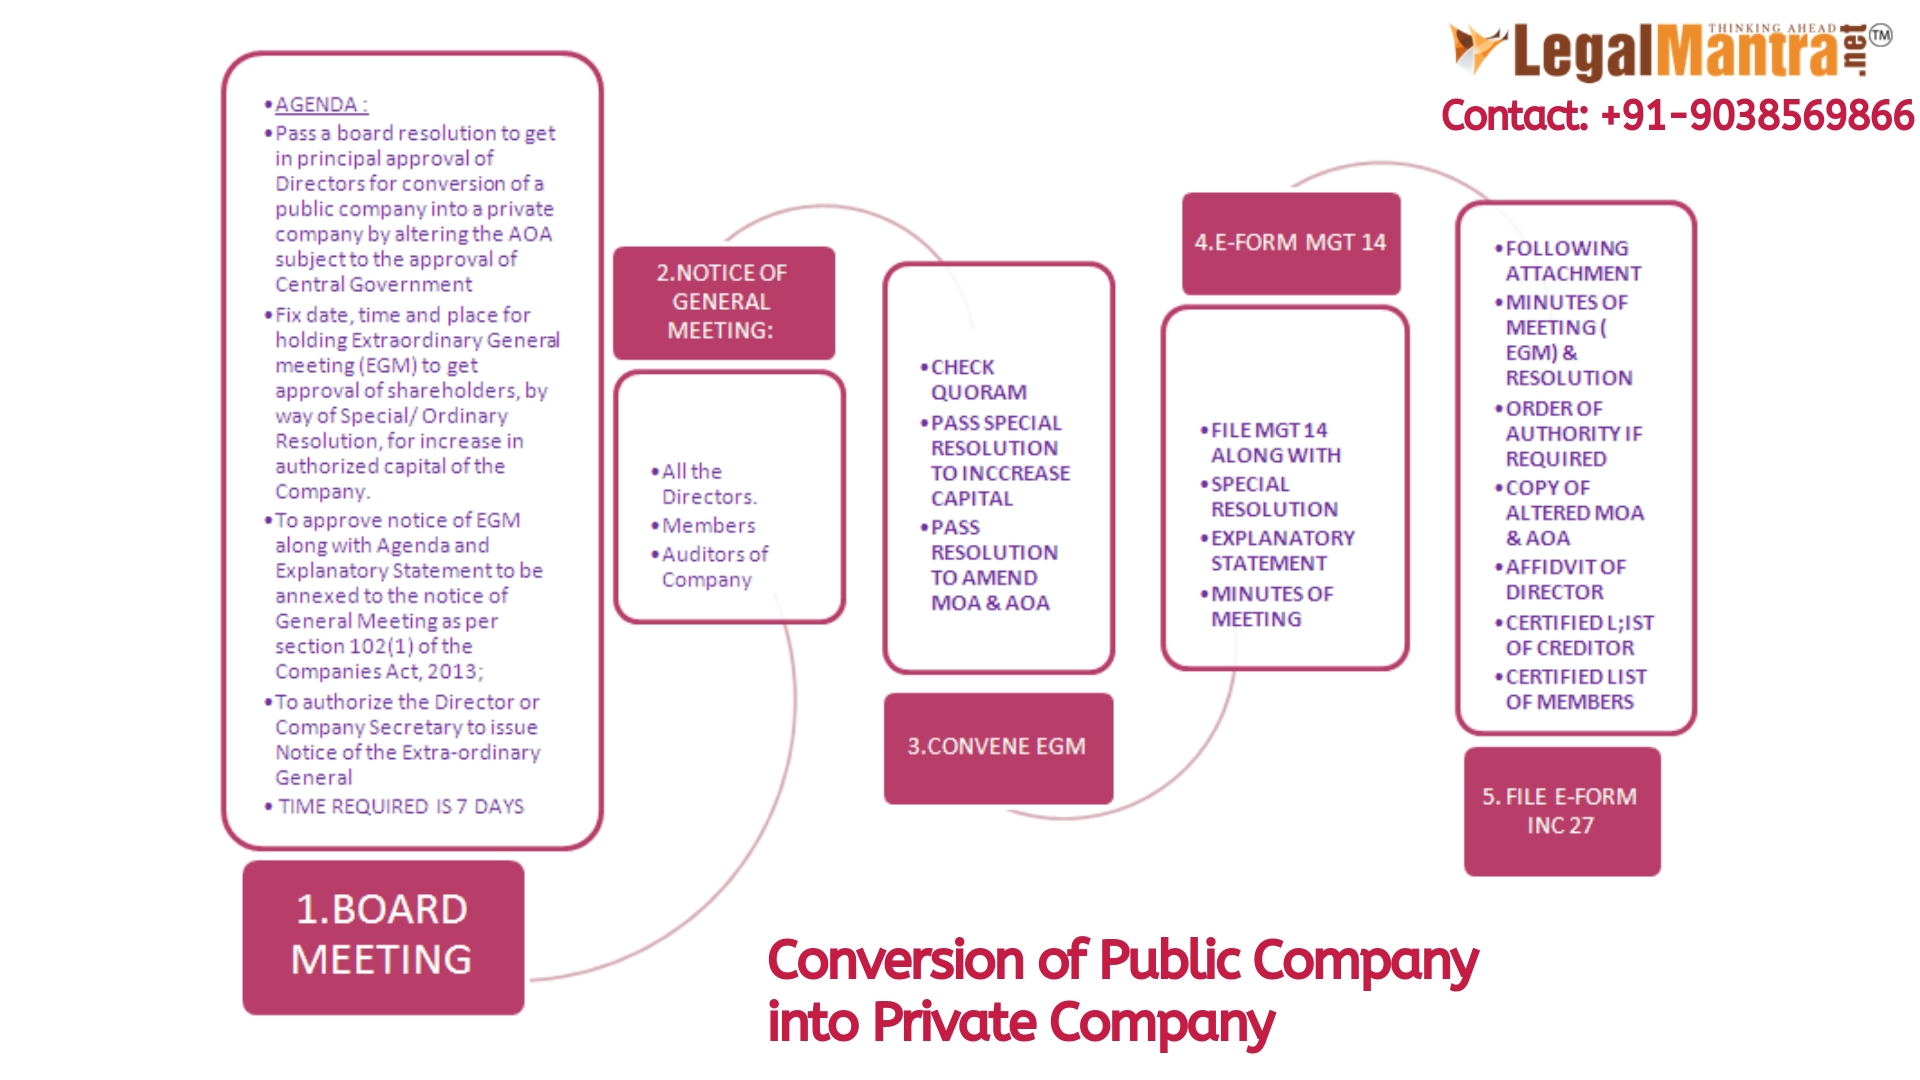 Conversion of a Public Company into a Private Company